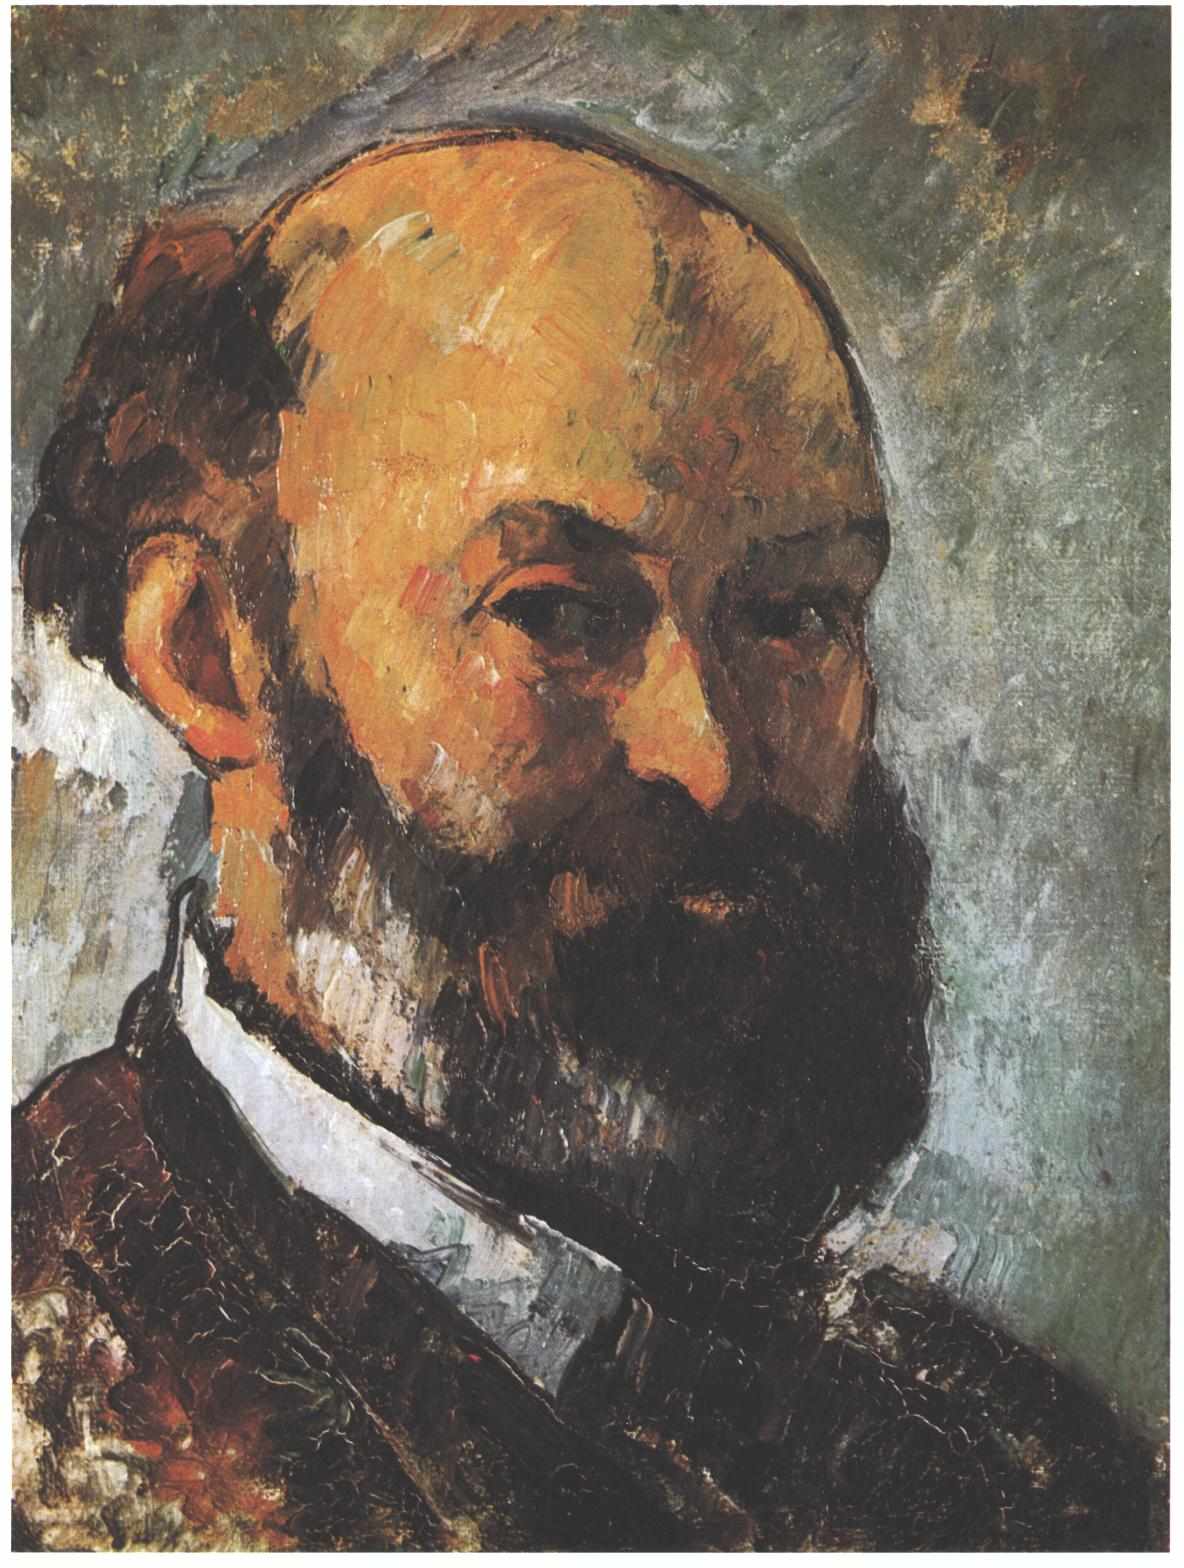 Поль Сезанн - Автопортрет 1880